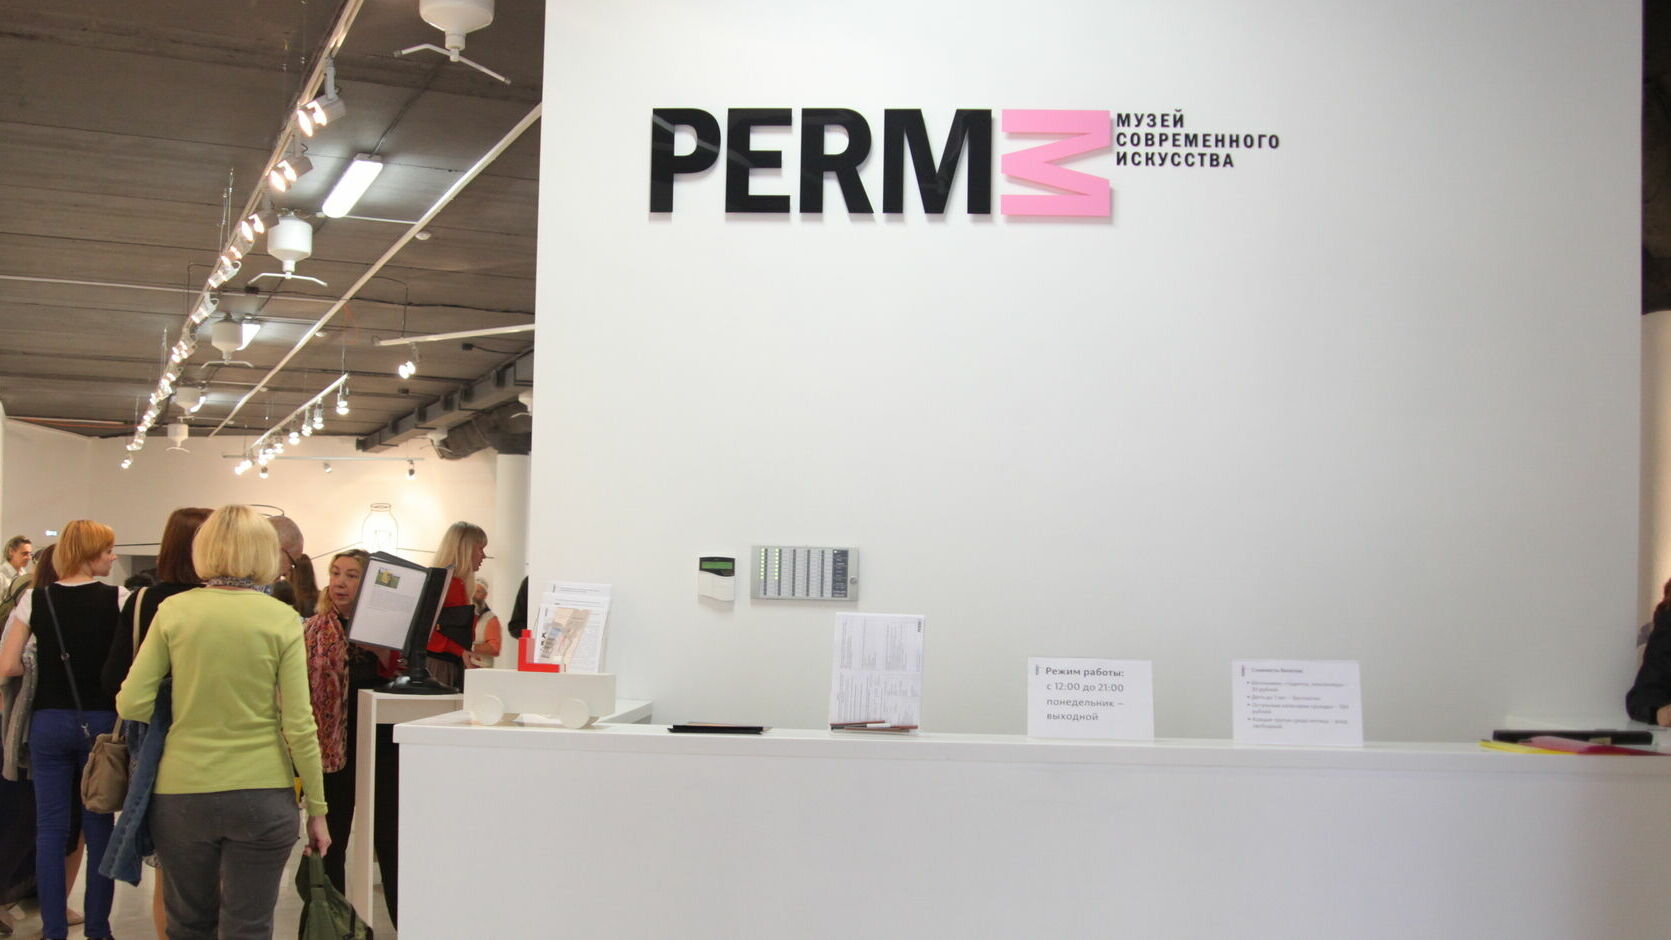 Прокуратура Мотовилихинского района проверяет музей современного искусства PERMM